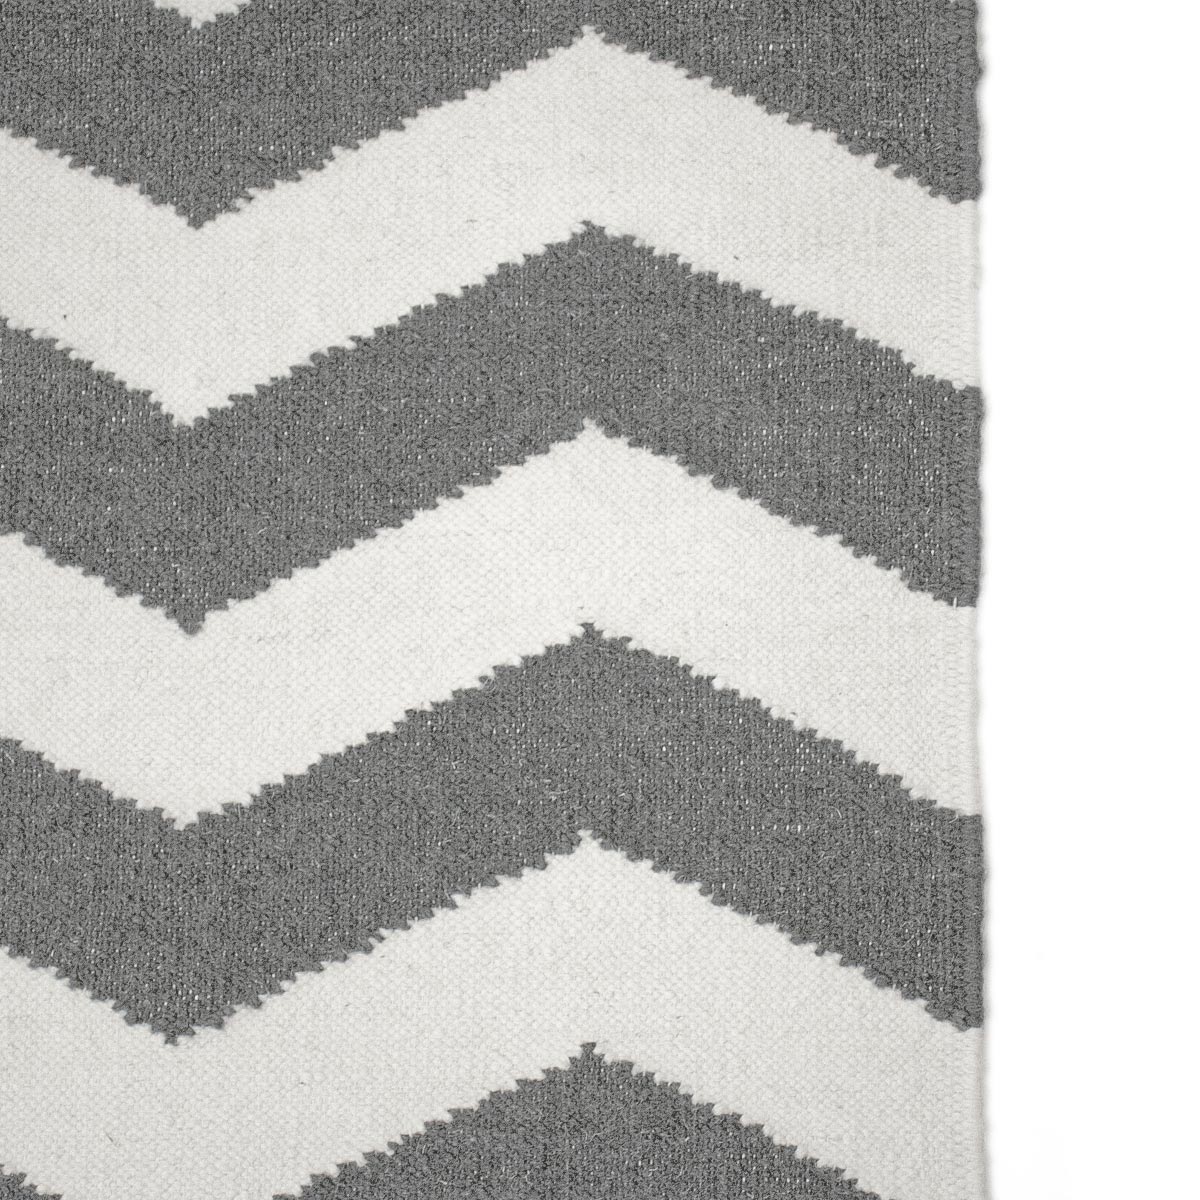 שטיח קילים הדס 01 אפור כהה/לבן עם פרנזים | השטיח האדום